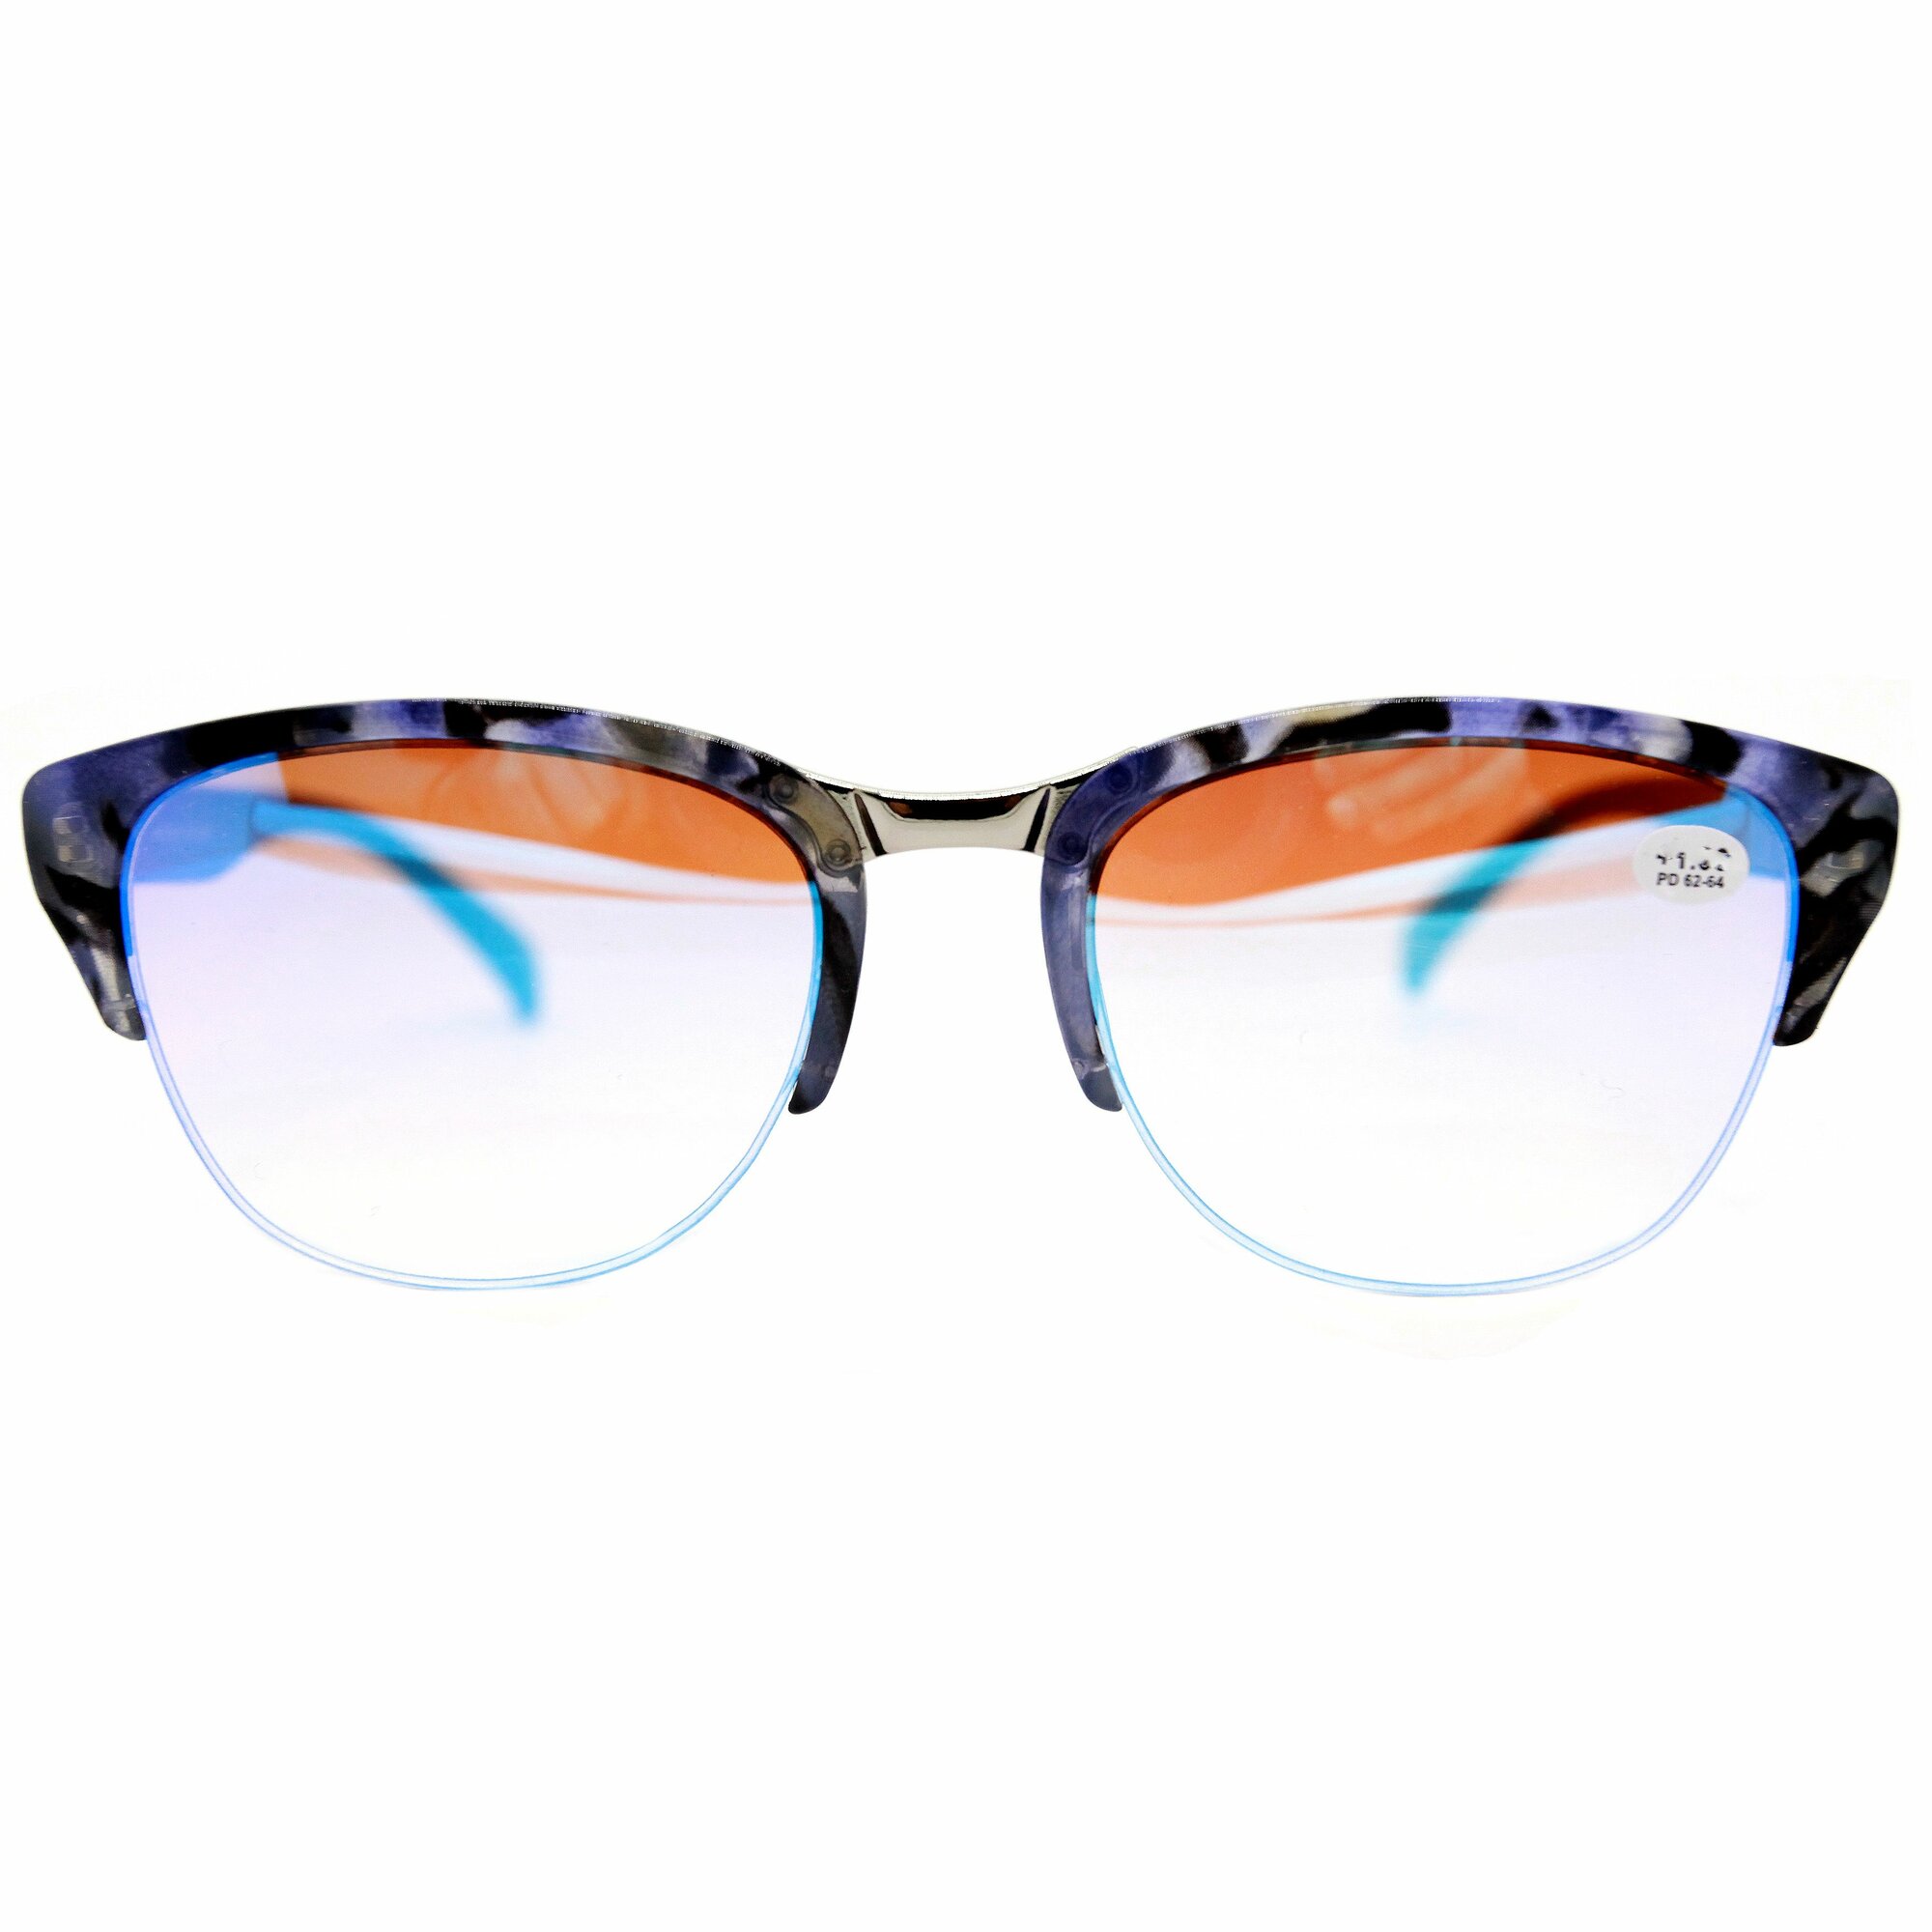 Женские очки зеркальные корригирующие (-2.00) Fabia Monti 0239, зеркальные, без футляра, РЦ 62-64